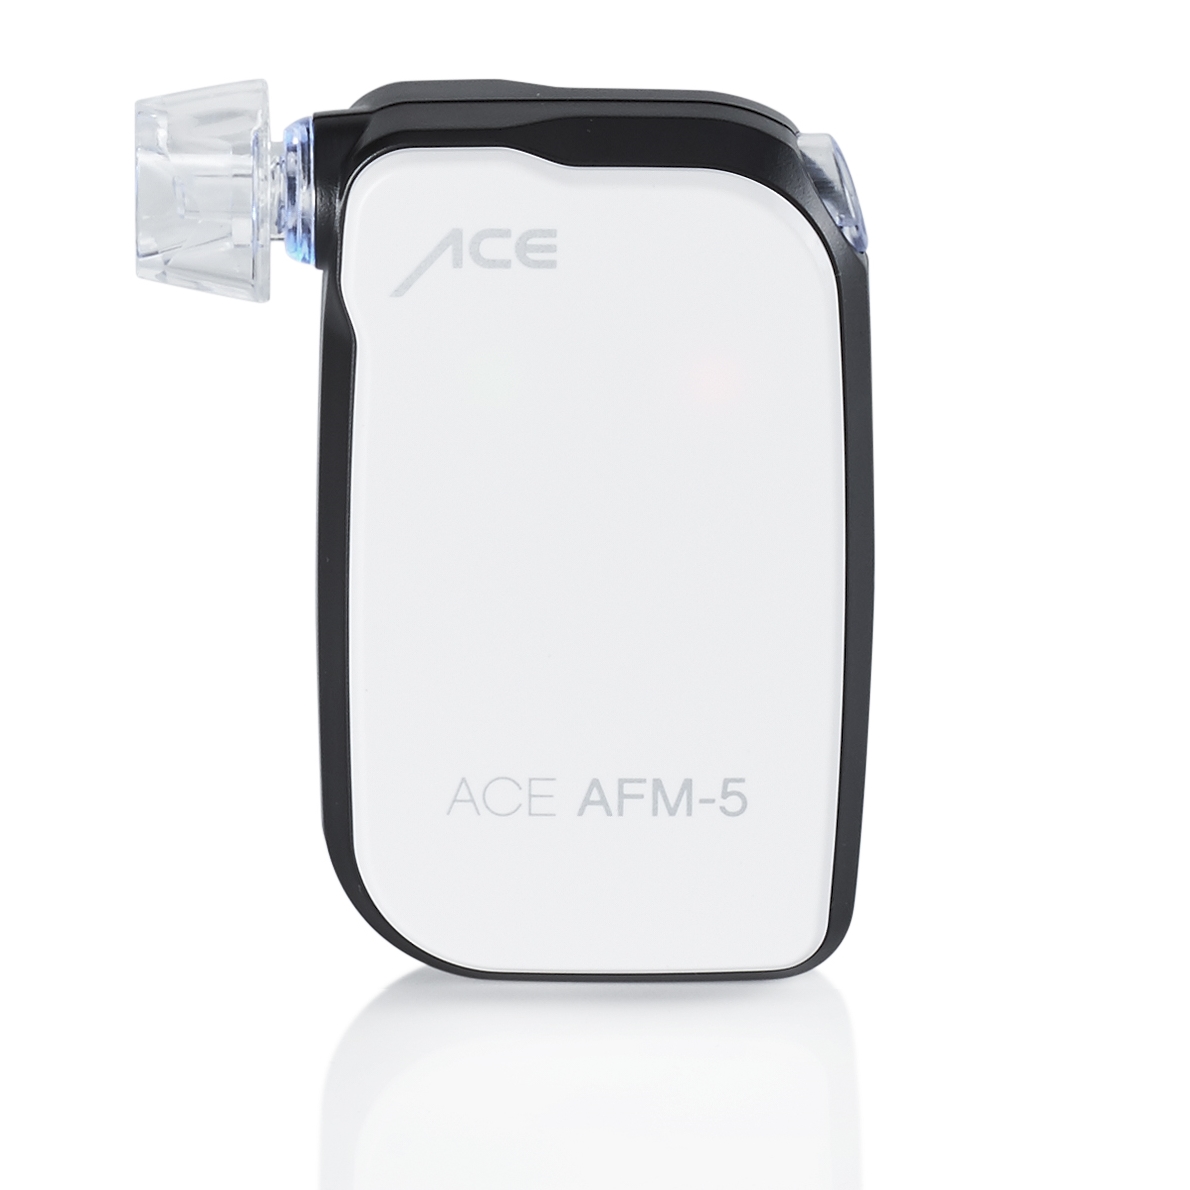 Alkomat ACE AFM-5 für Smartphones (Android und iOS) - Alkomaten kaufen